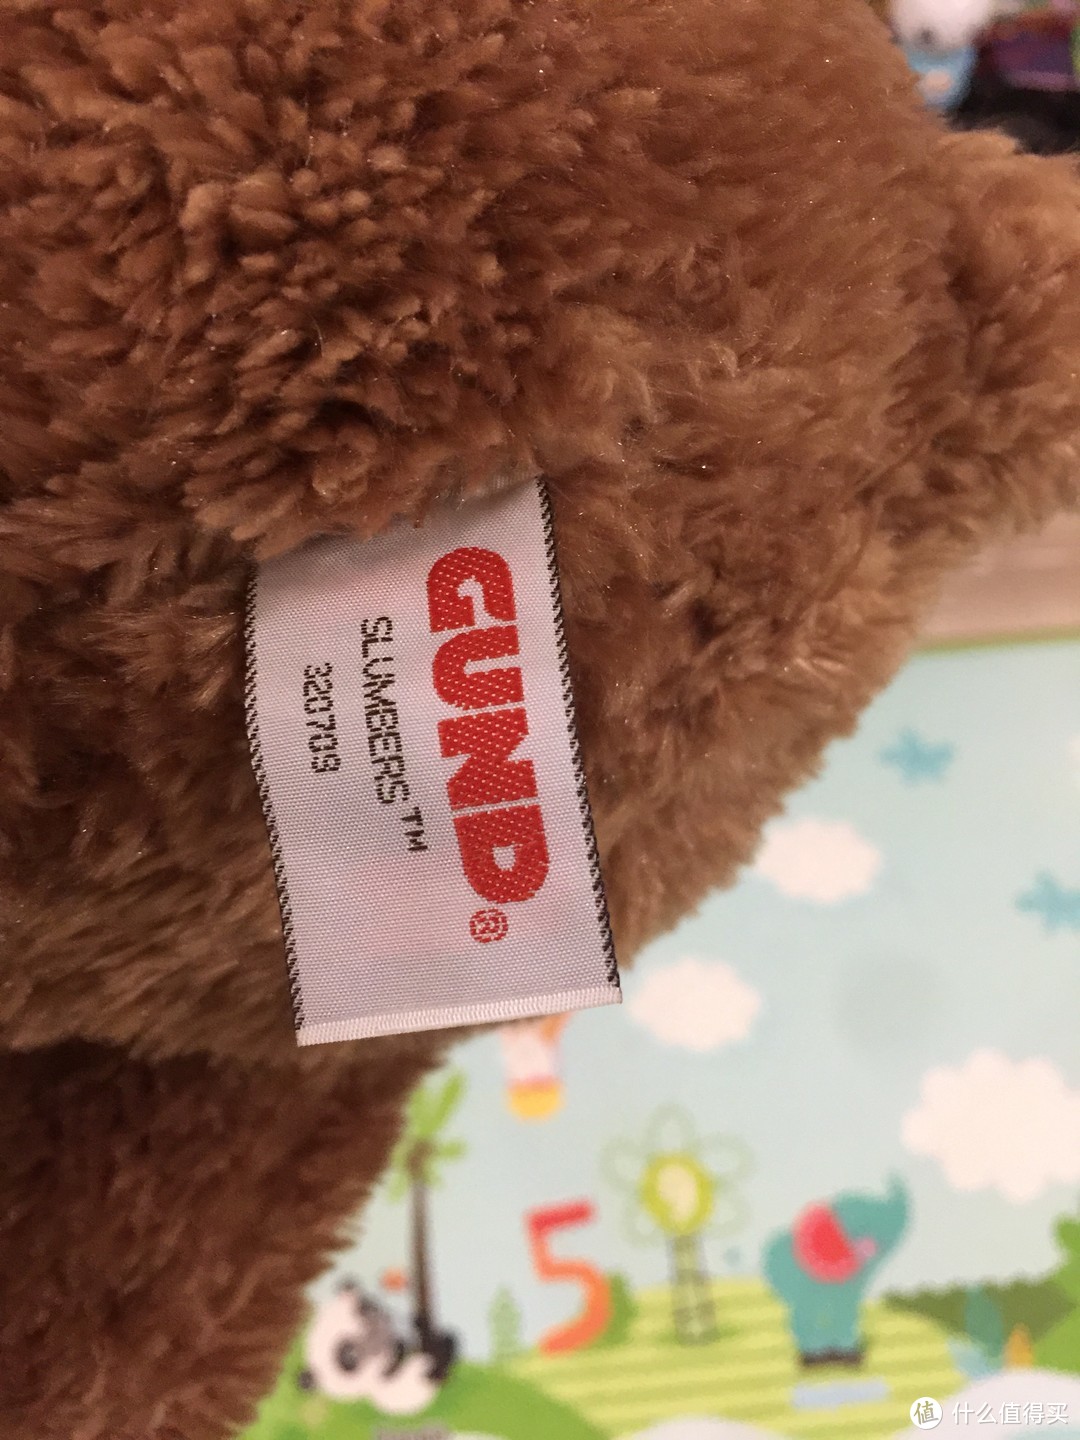 并非“First Teddy Bear”的 第一只熊玩具